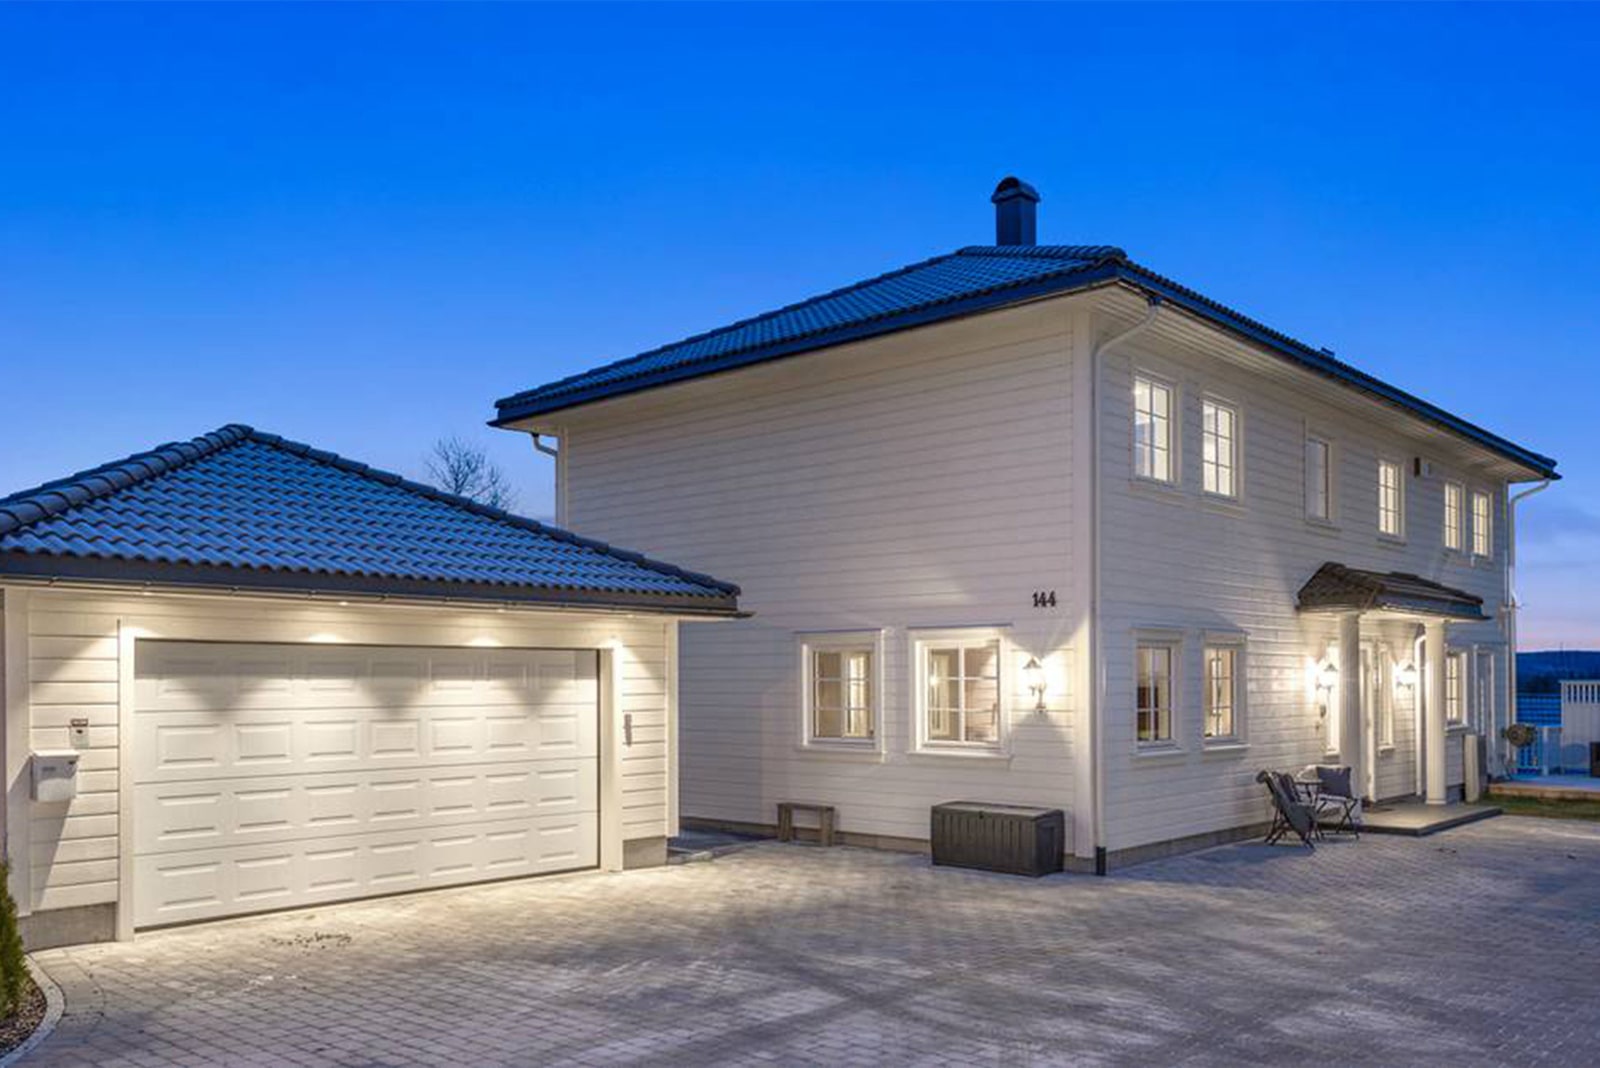 Hvit enebolig i klassisk stil med frittliggende garasje - Arkitekttegninger og ansvarlig søker for byggesøknader - 3D visualisering for salg av bolig